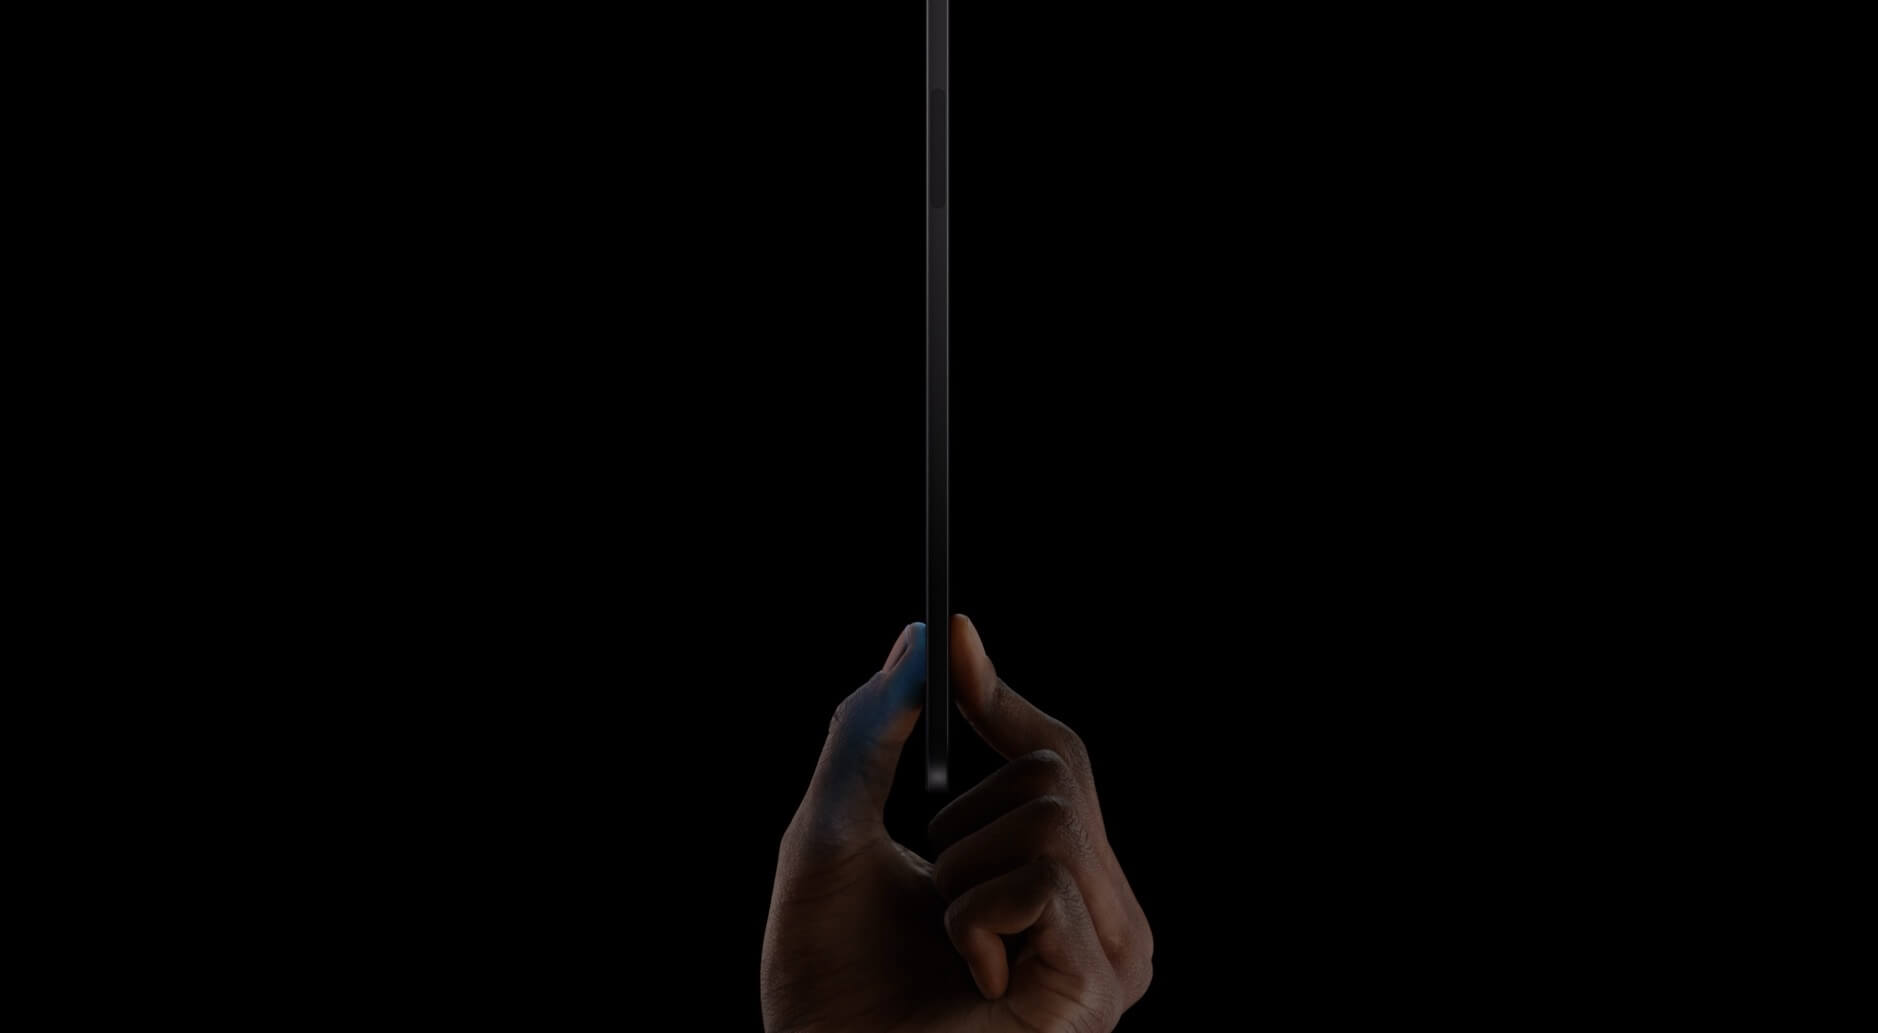 Das Bild zeigt eine Hand, die ein neues iPad Pro zwischen Daumen und Zeigefinger hält, vor einem dunklen Hintergrund.